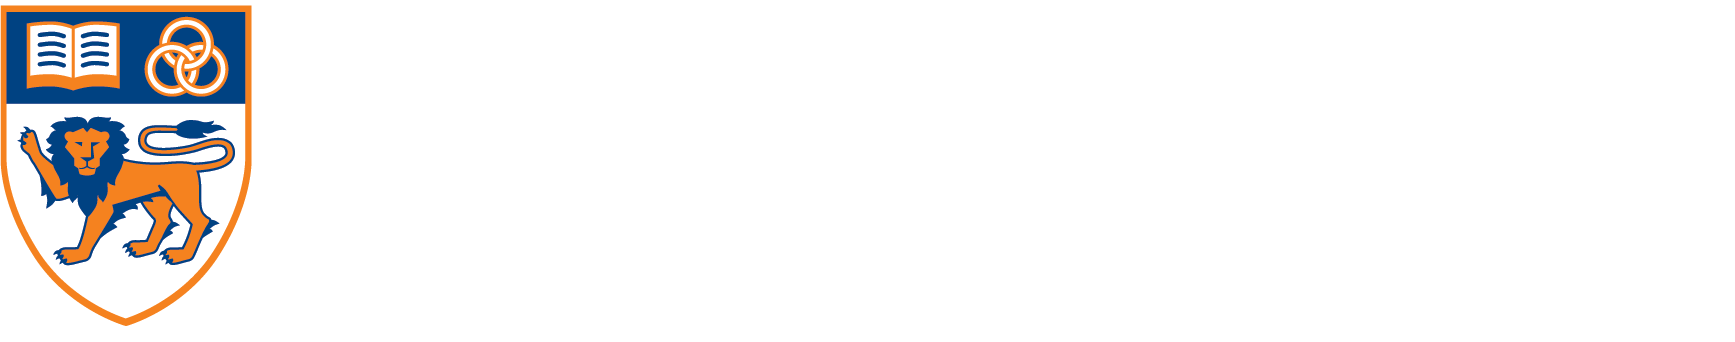 NUS Tech Portal